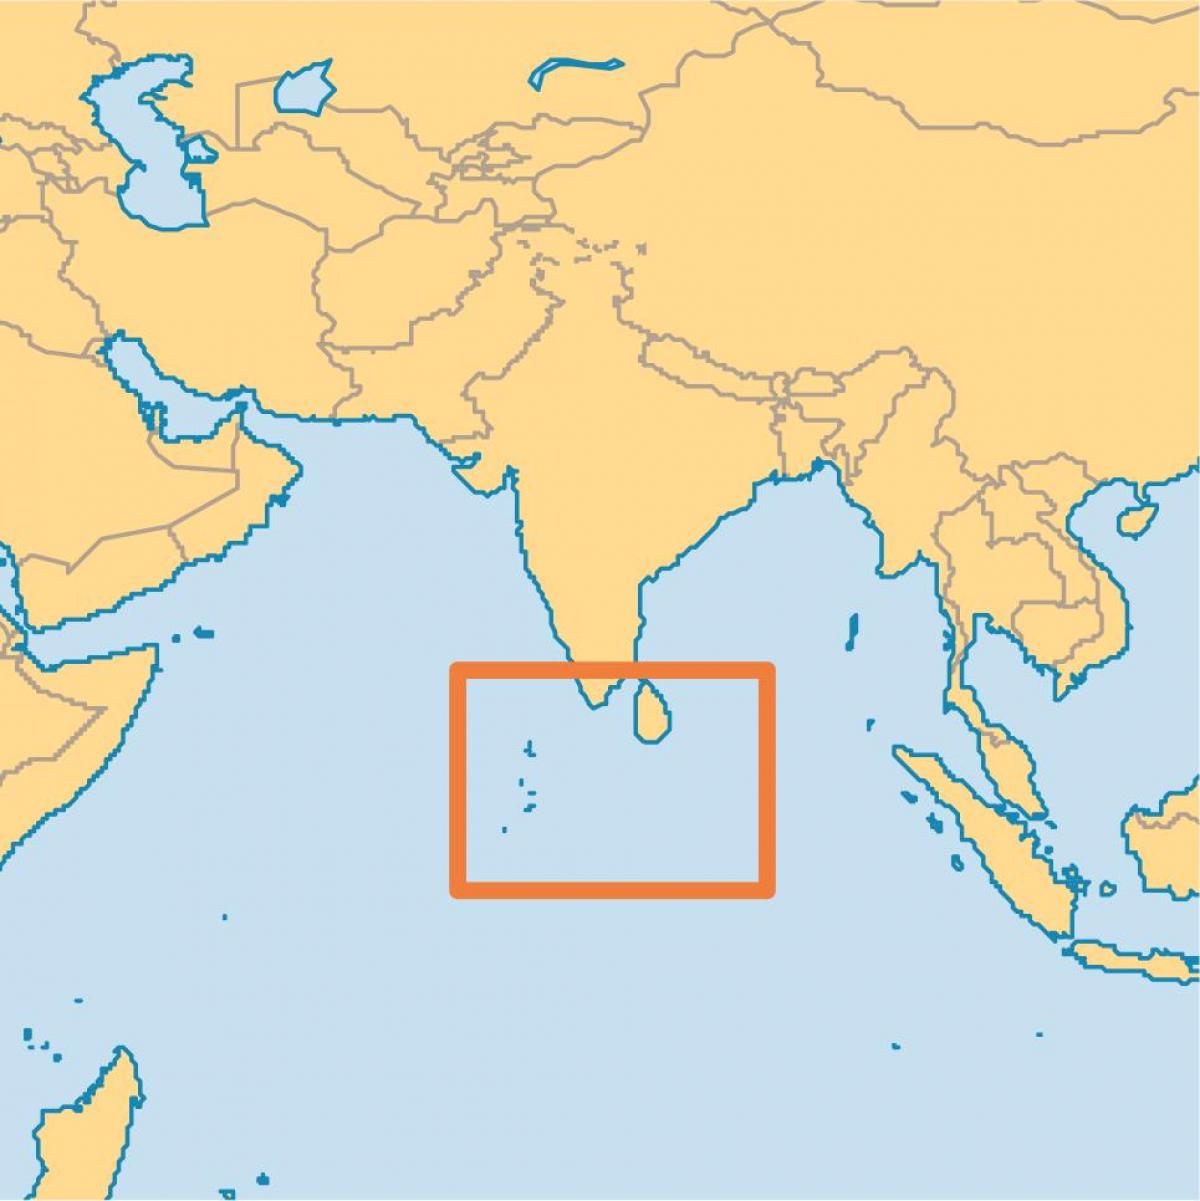 insula maldive localizare pe harta lumii